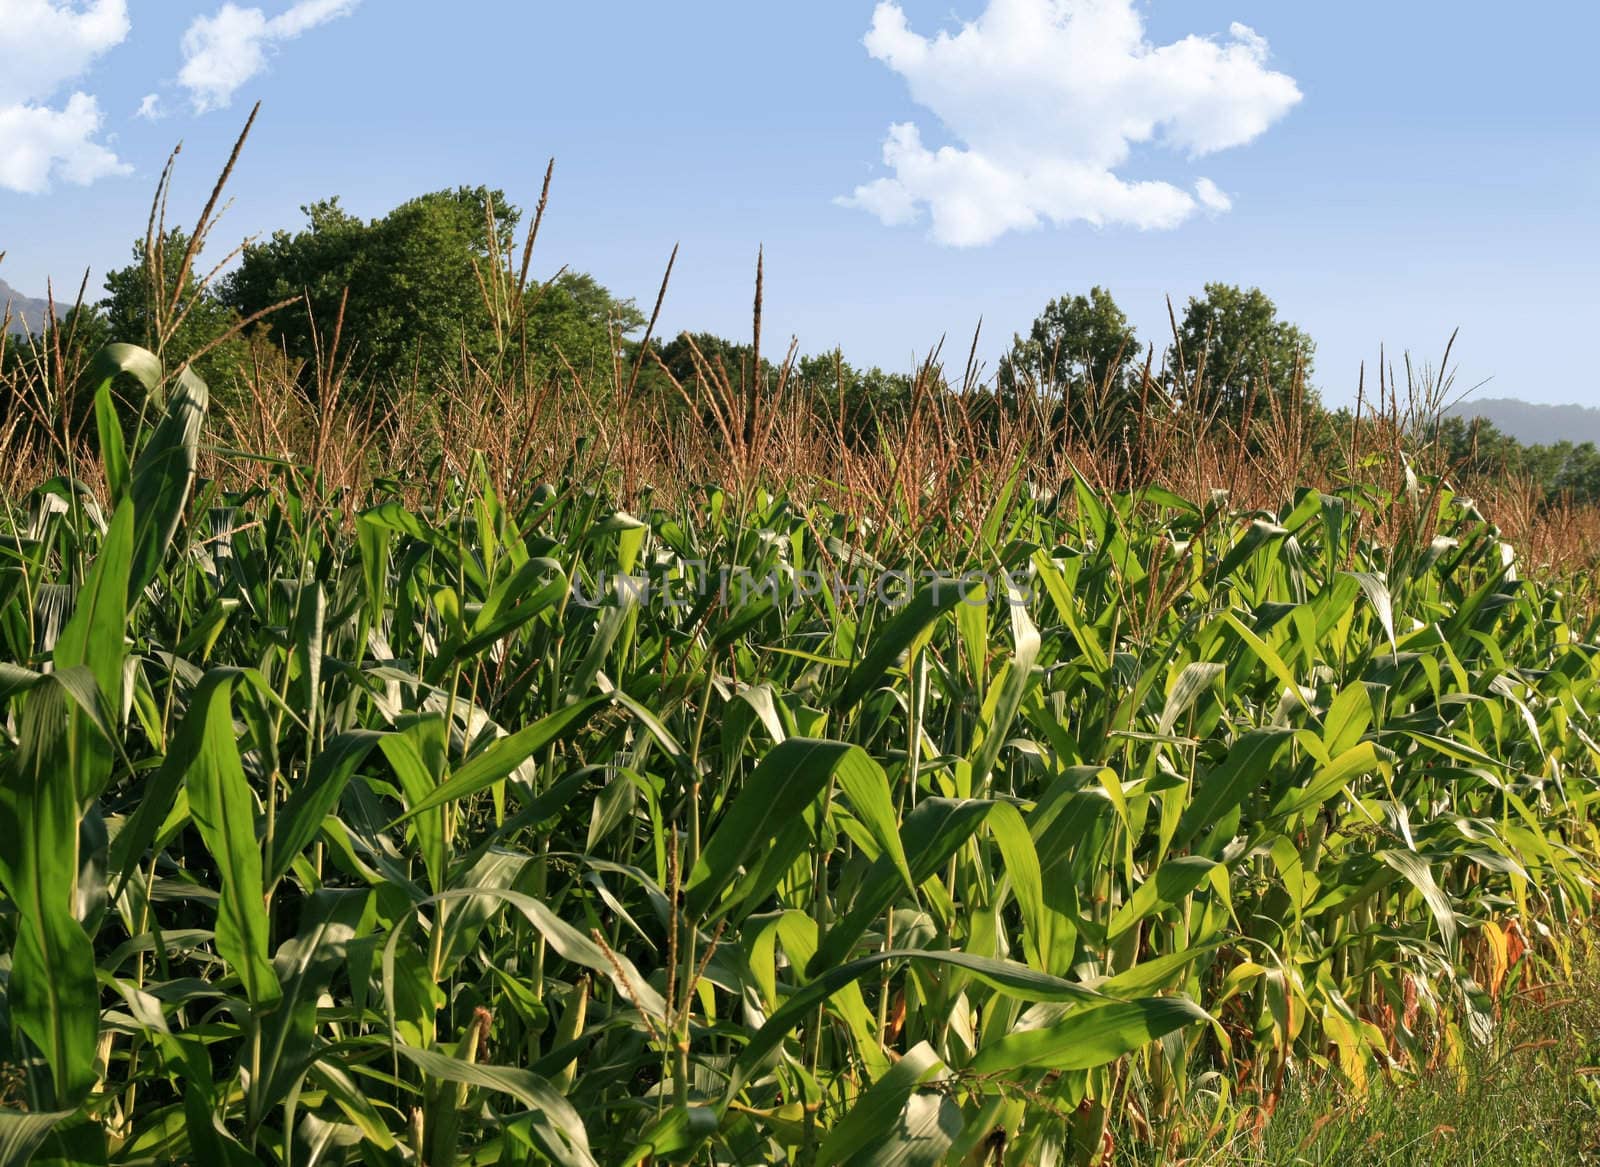 Corn field on a blue sky in summer